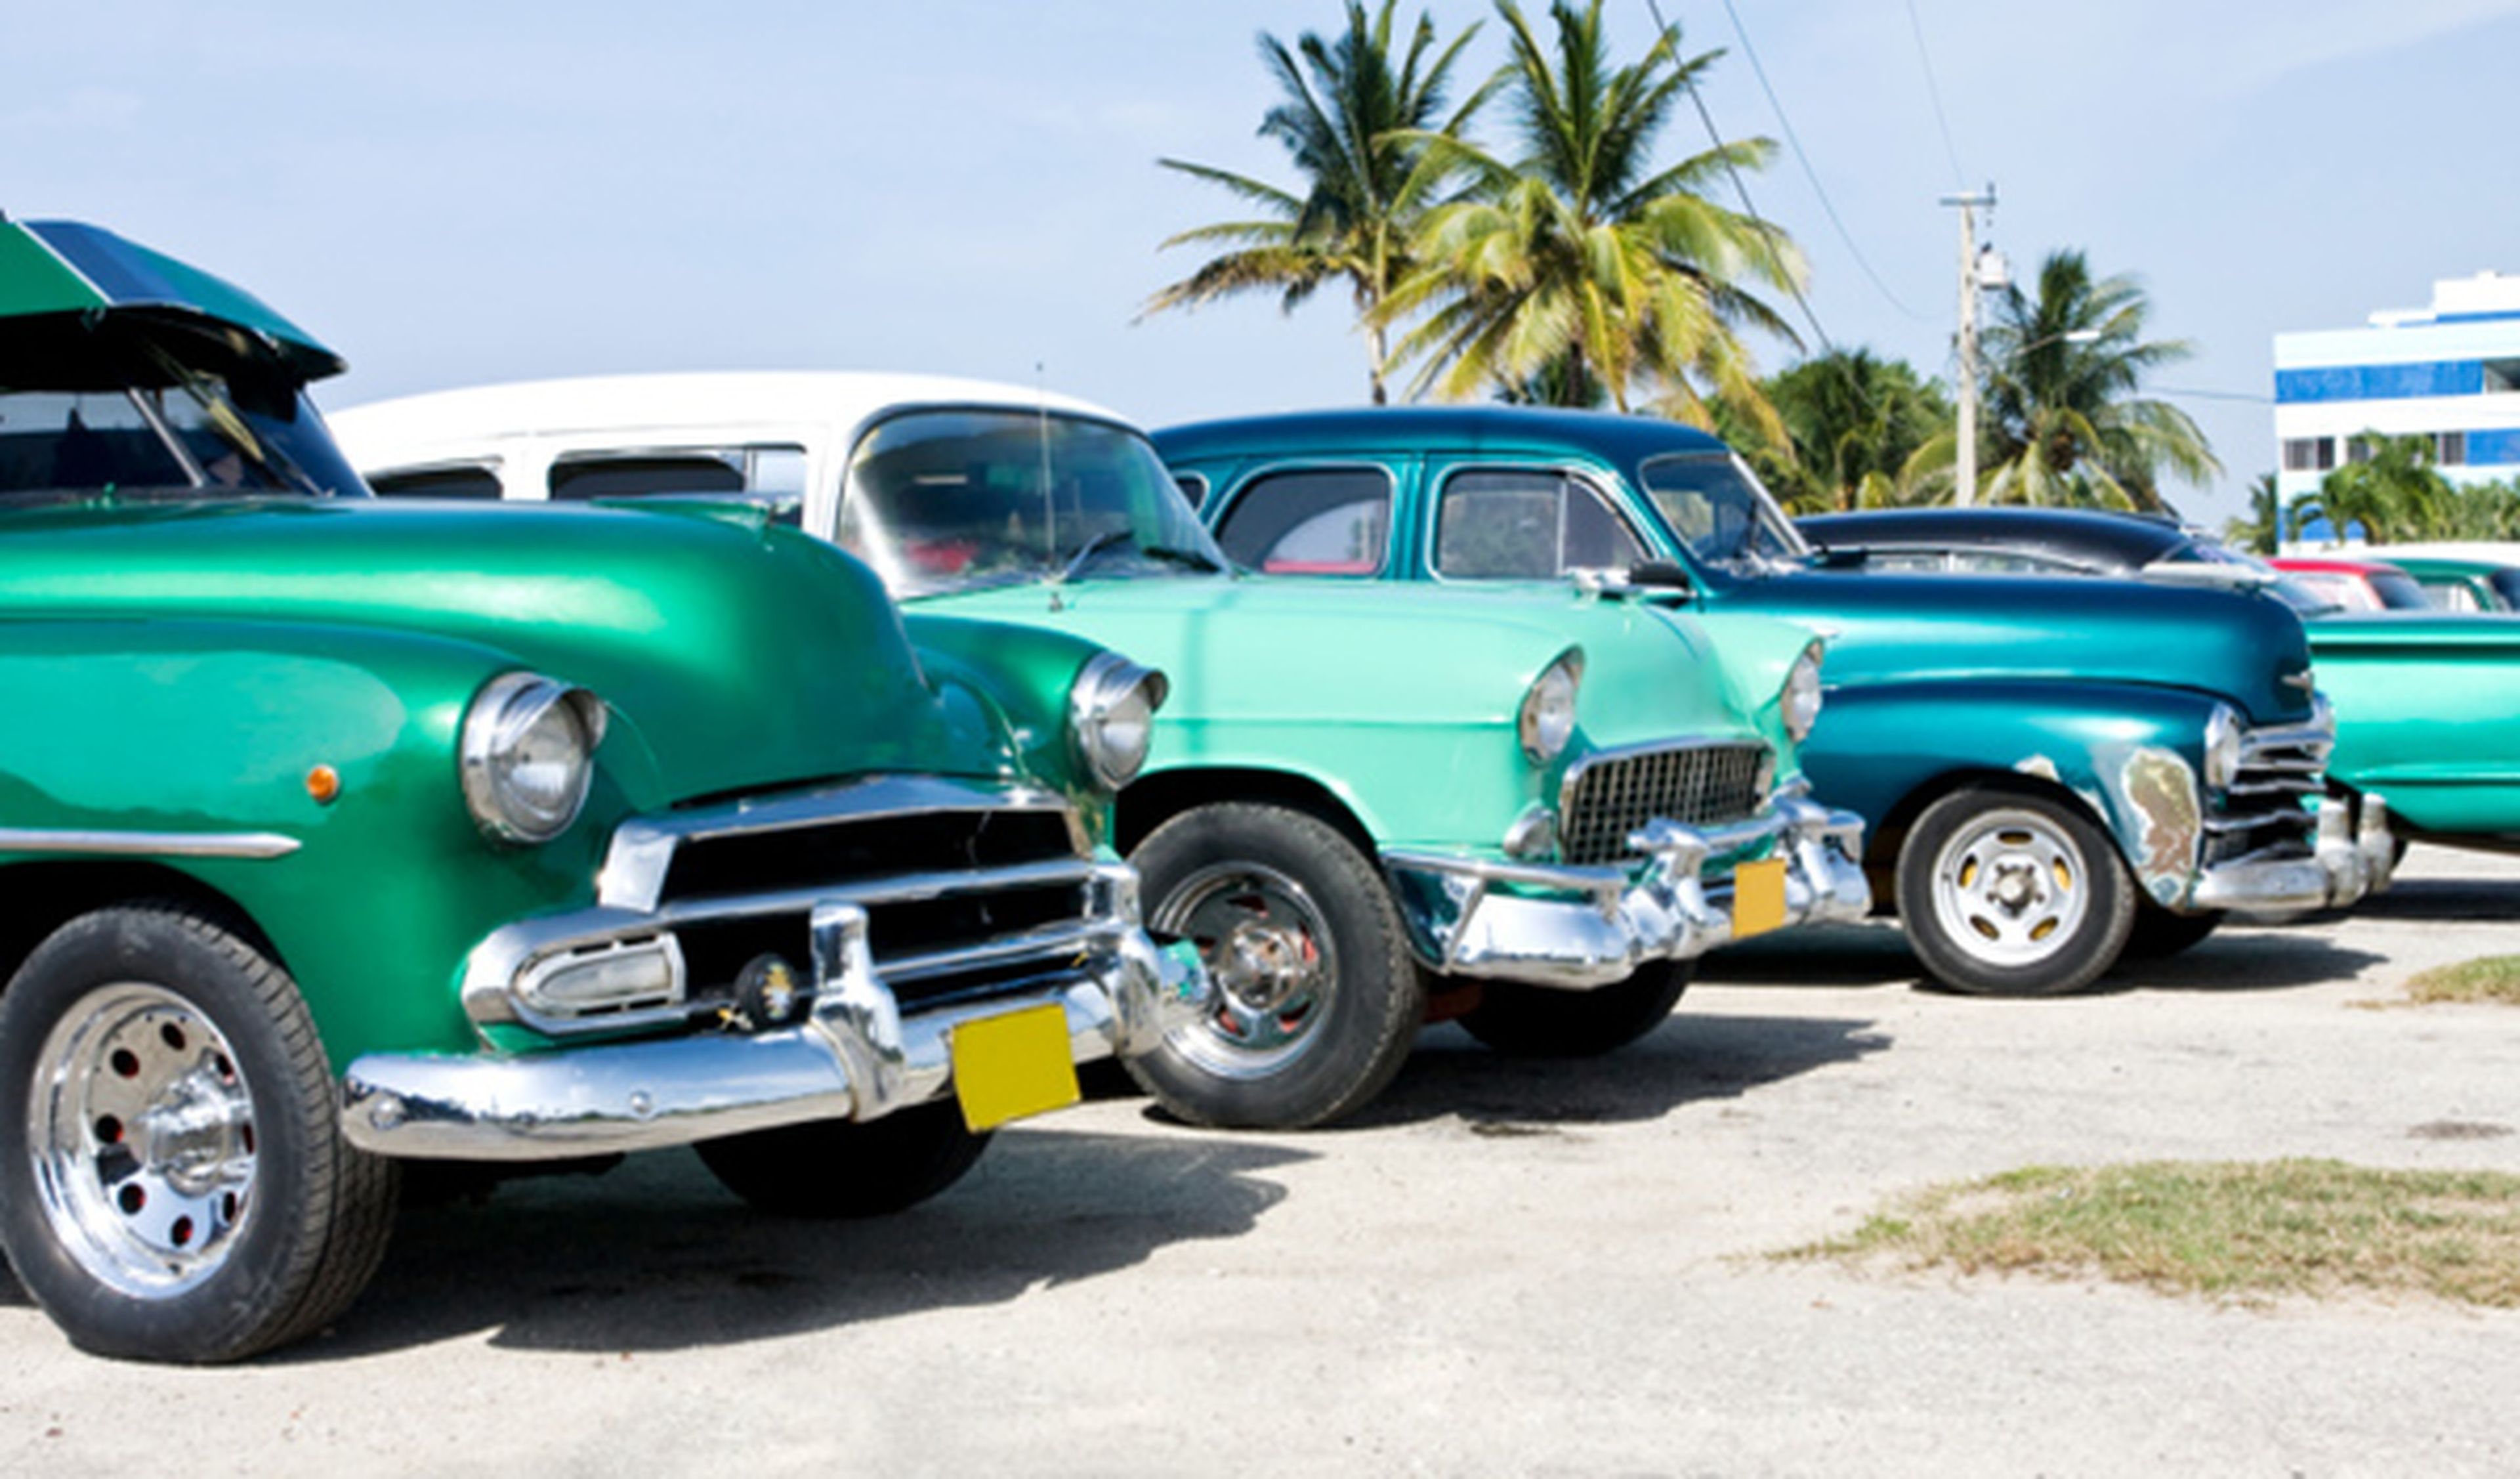 Hoy empieza en Cuba la compra y venta libre de vehículos